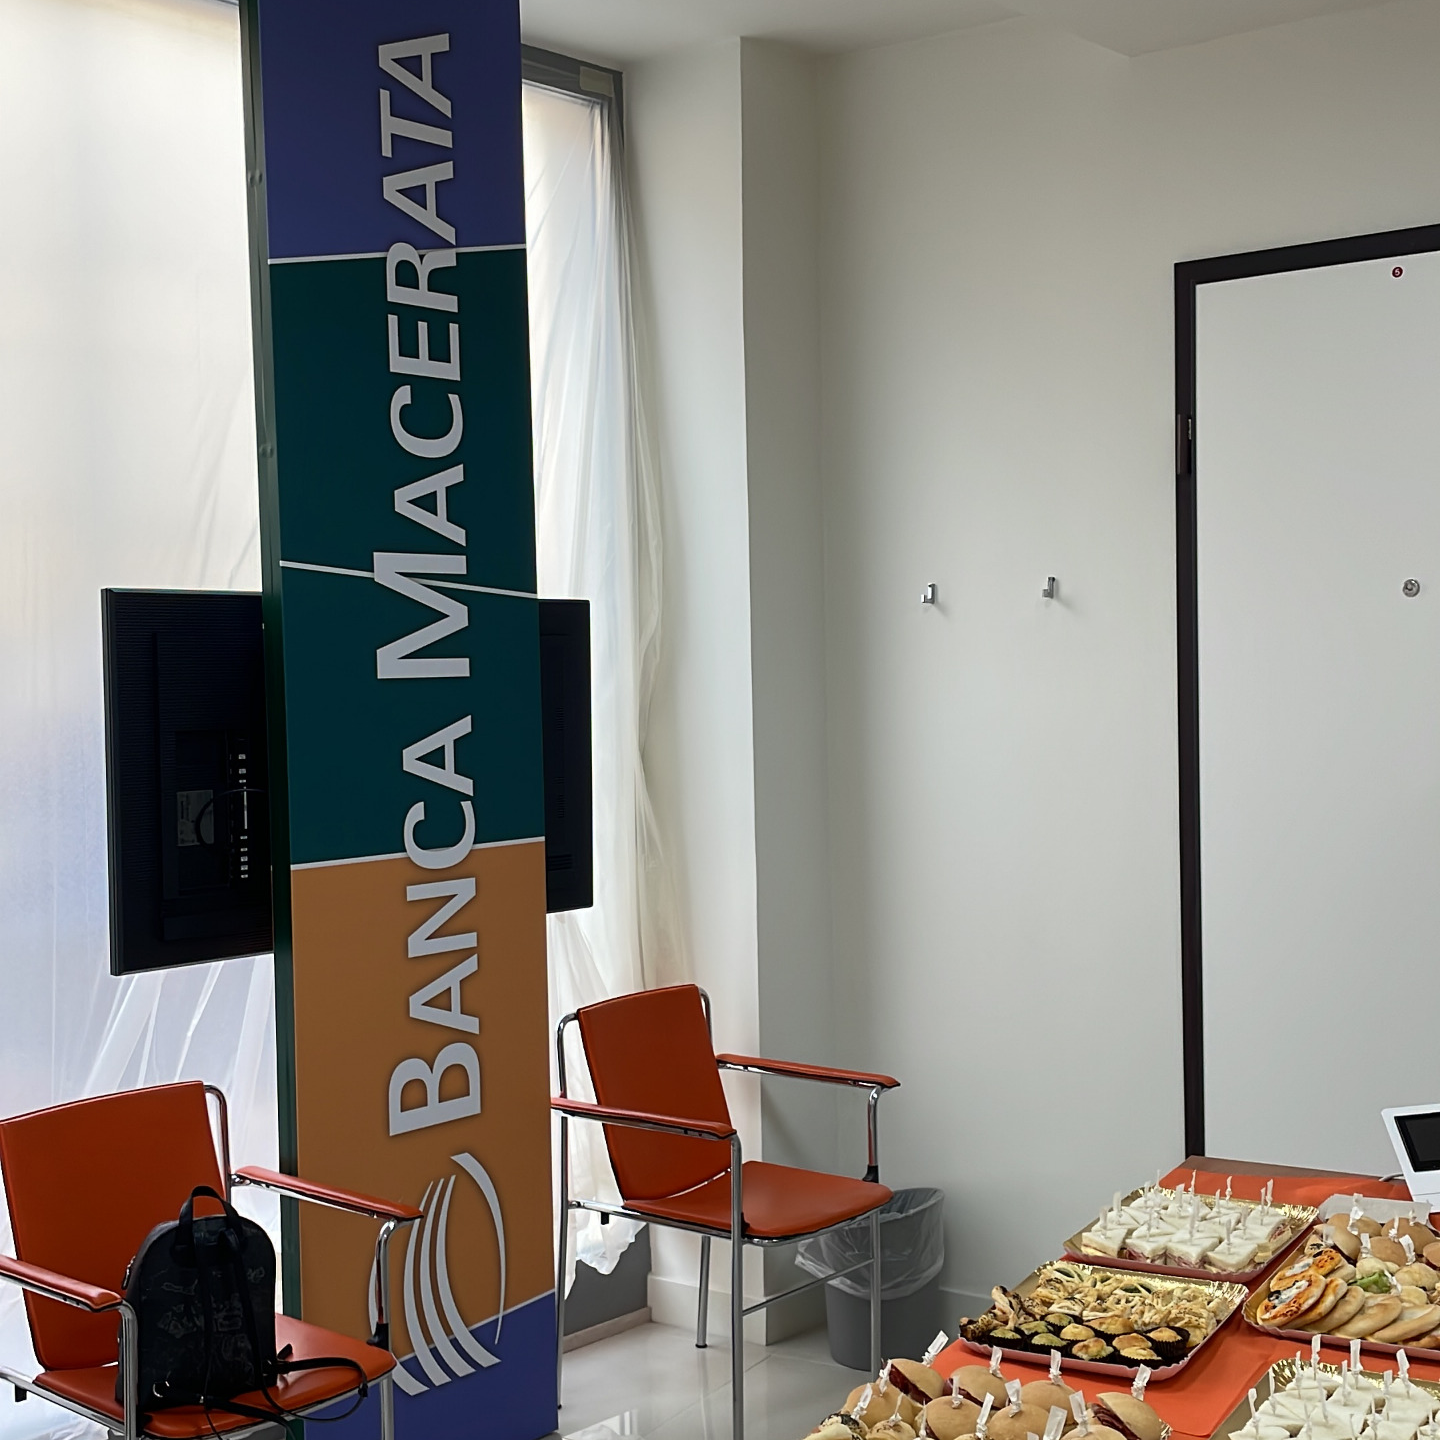 Ampliamento filiale di Macerata: più spazi dedicati alla clientela | Banca Macerata 2